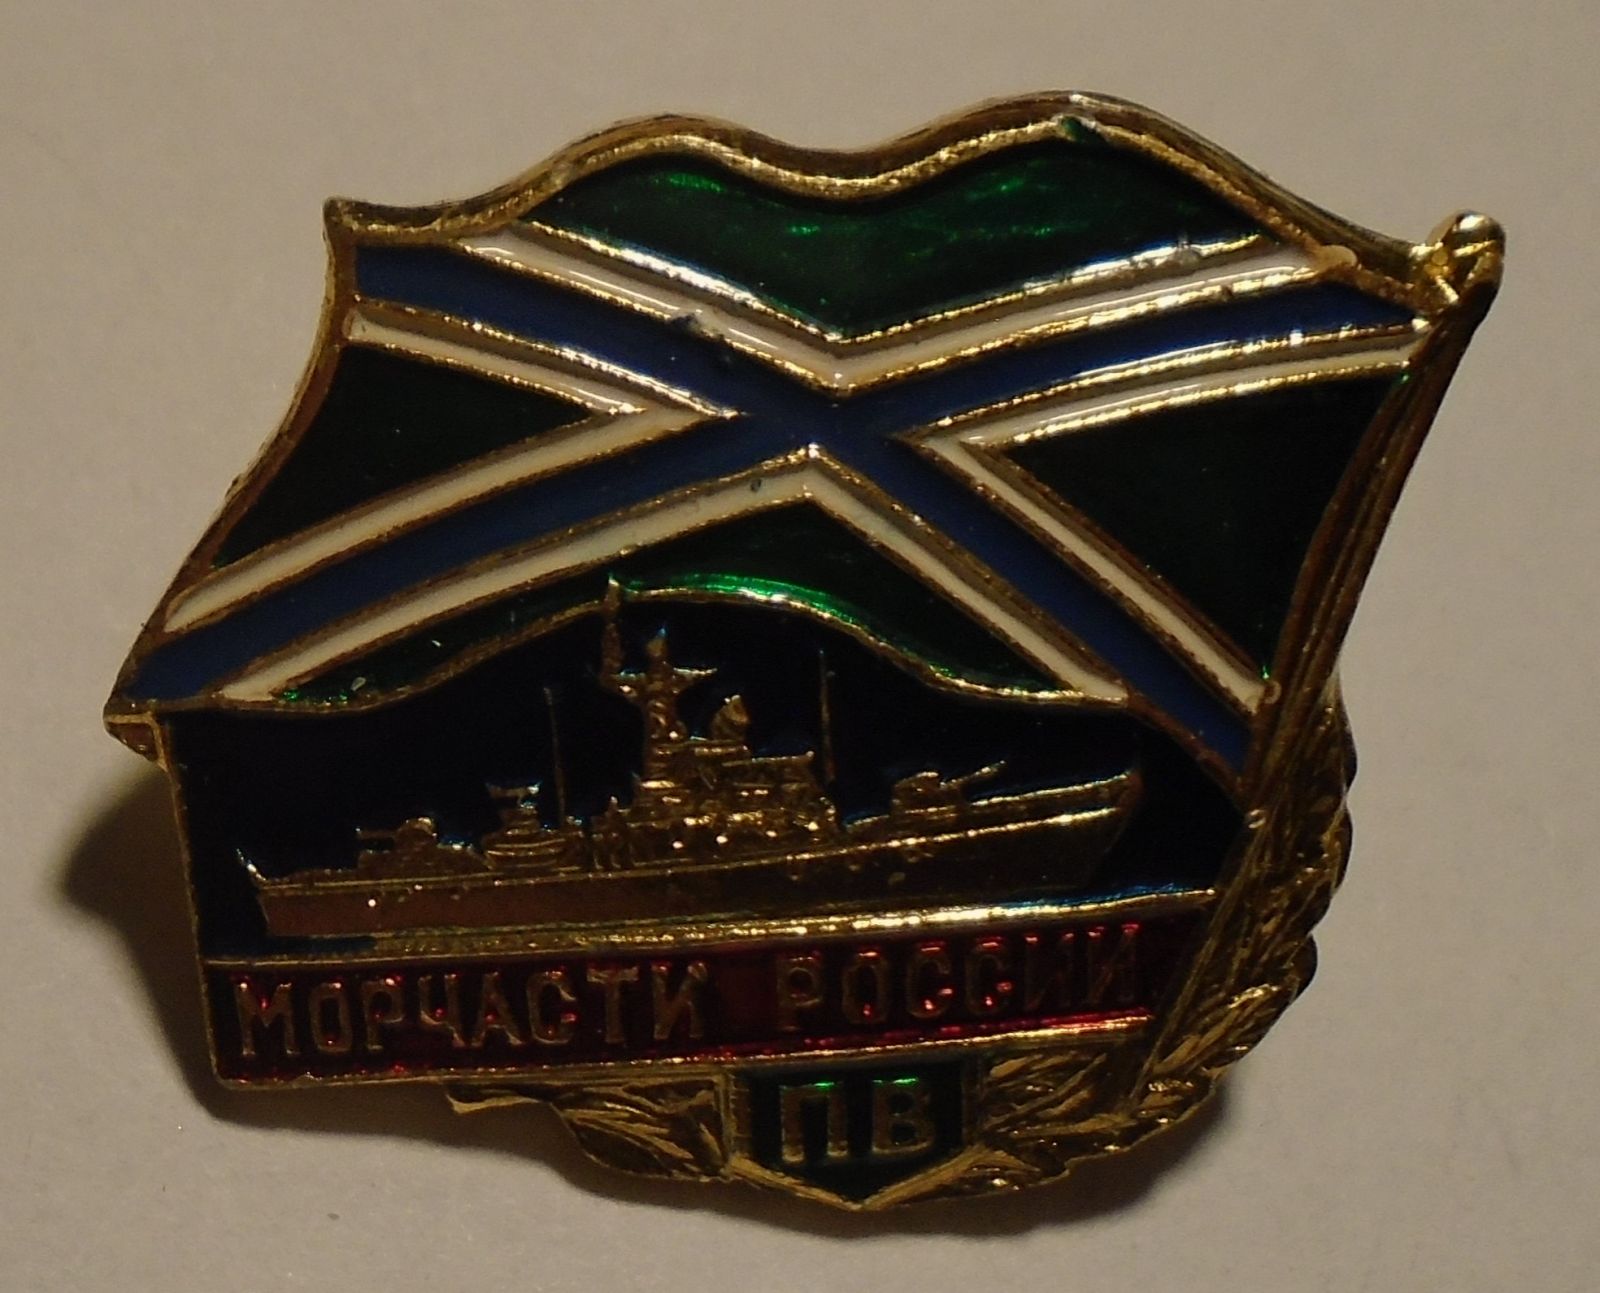 Rusko odznak válečného námořnictva